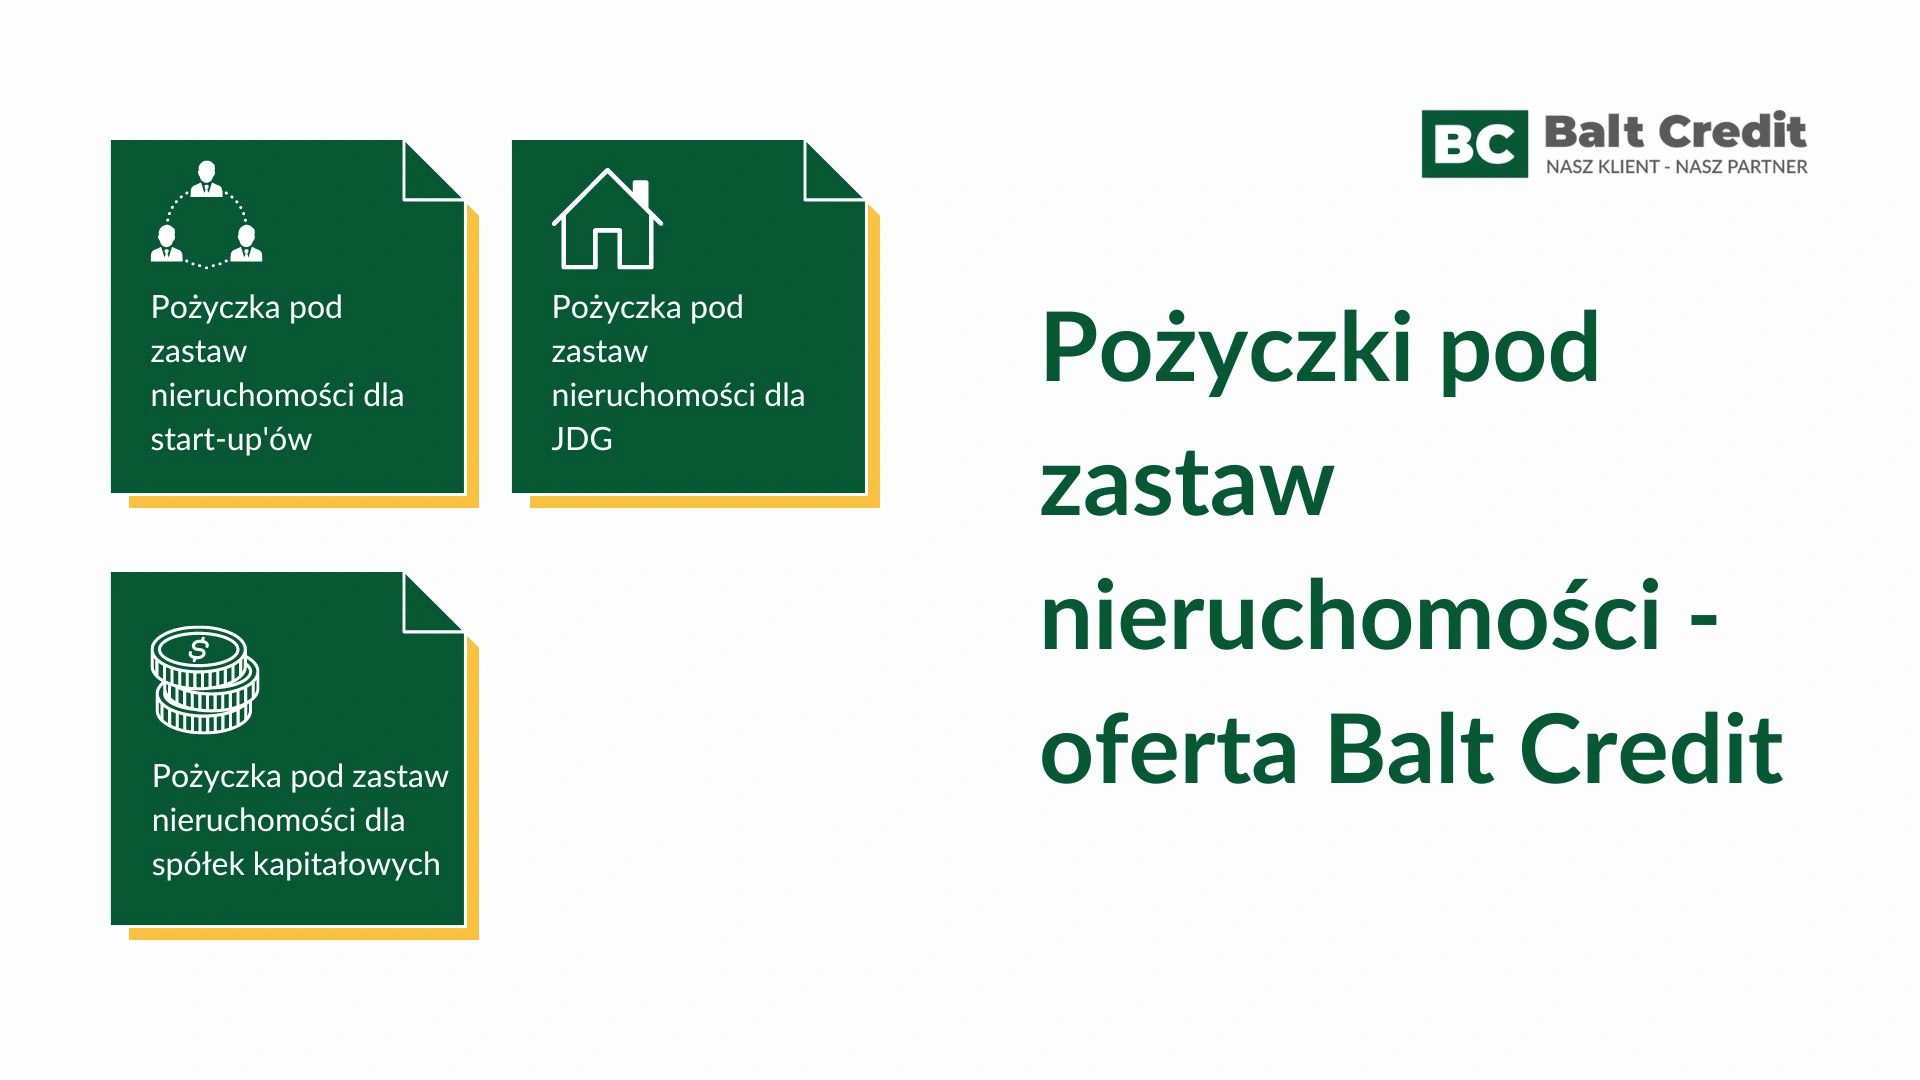 Pożyczki pod zastaw nieruchomości - oferta Balt Credit